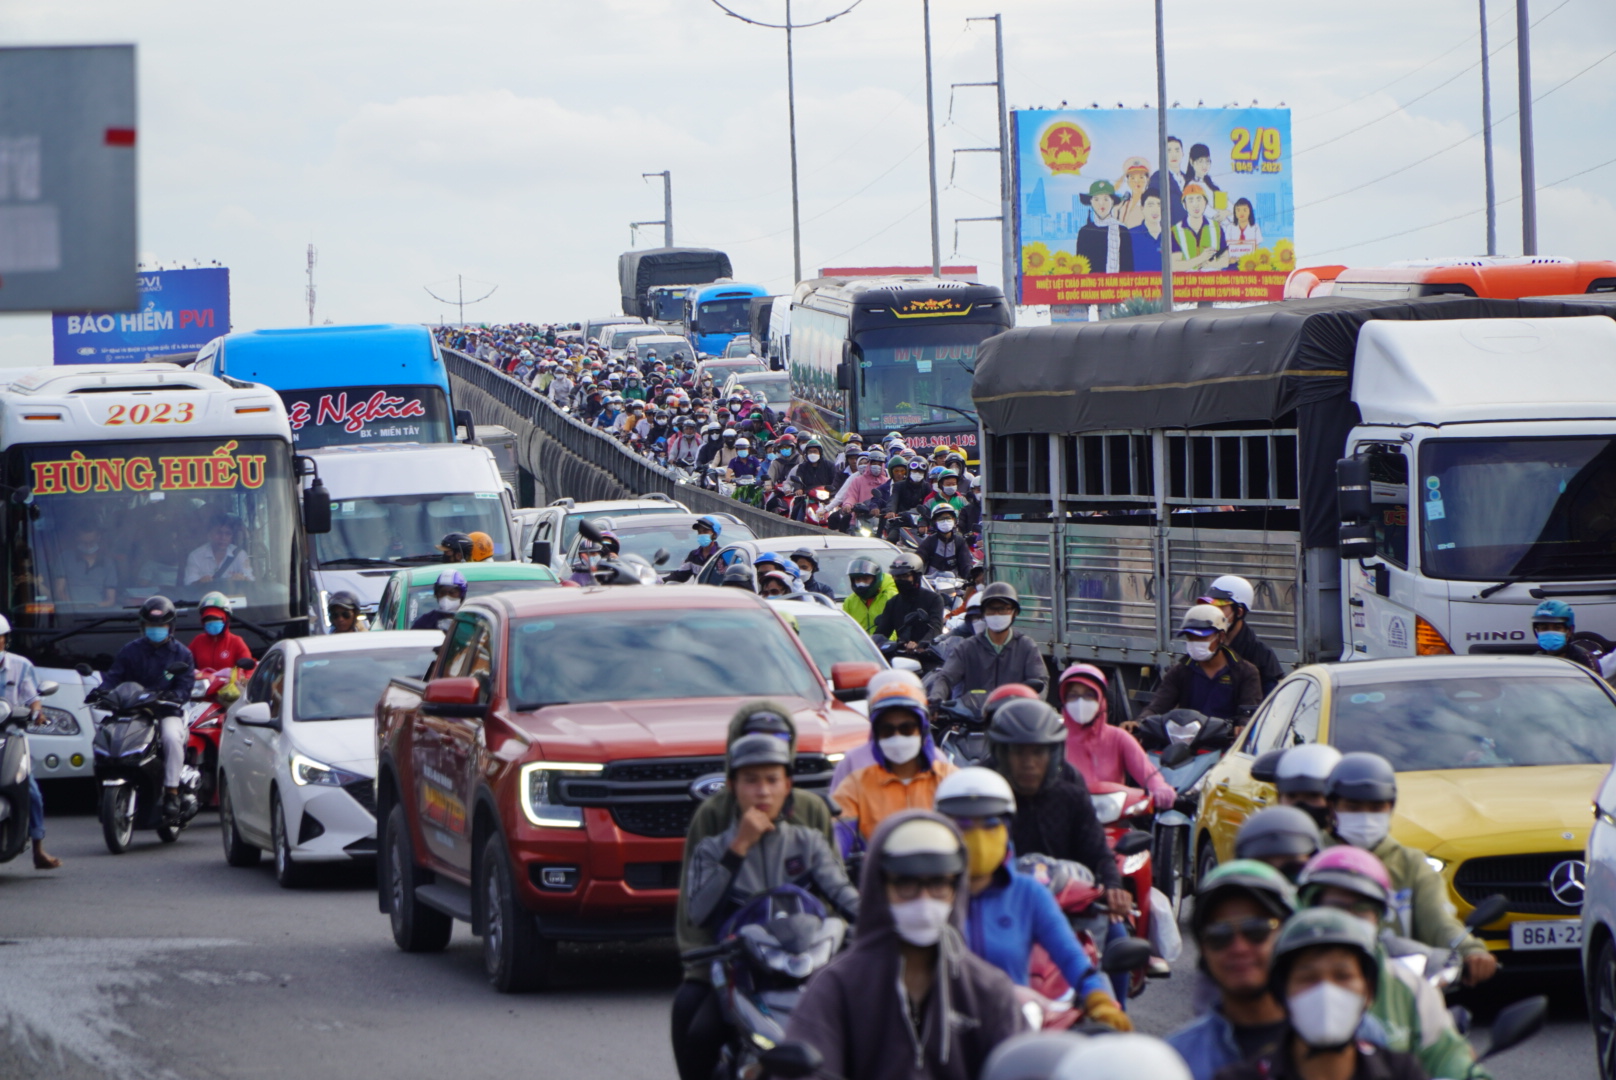 Ghi nhận của Lao Động vào lúc 17h ngày 4.9 tại Quốc lộ 1A (đoạn qua huyện Bình Chánh, cửa ngõ phía Tây TPHCM), lượng xe từ các tỉnh miền Tây hướng về TPHCM tăng đột biến gây ra tình trạng ùn tắc cục bộ, các phương tiện di chuyển rất chậm.